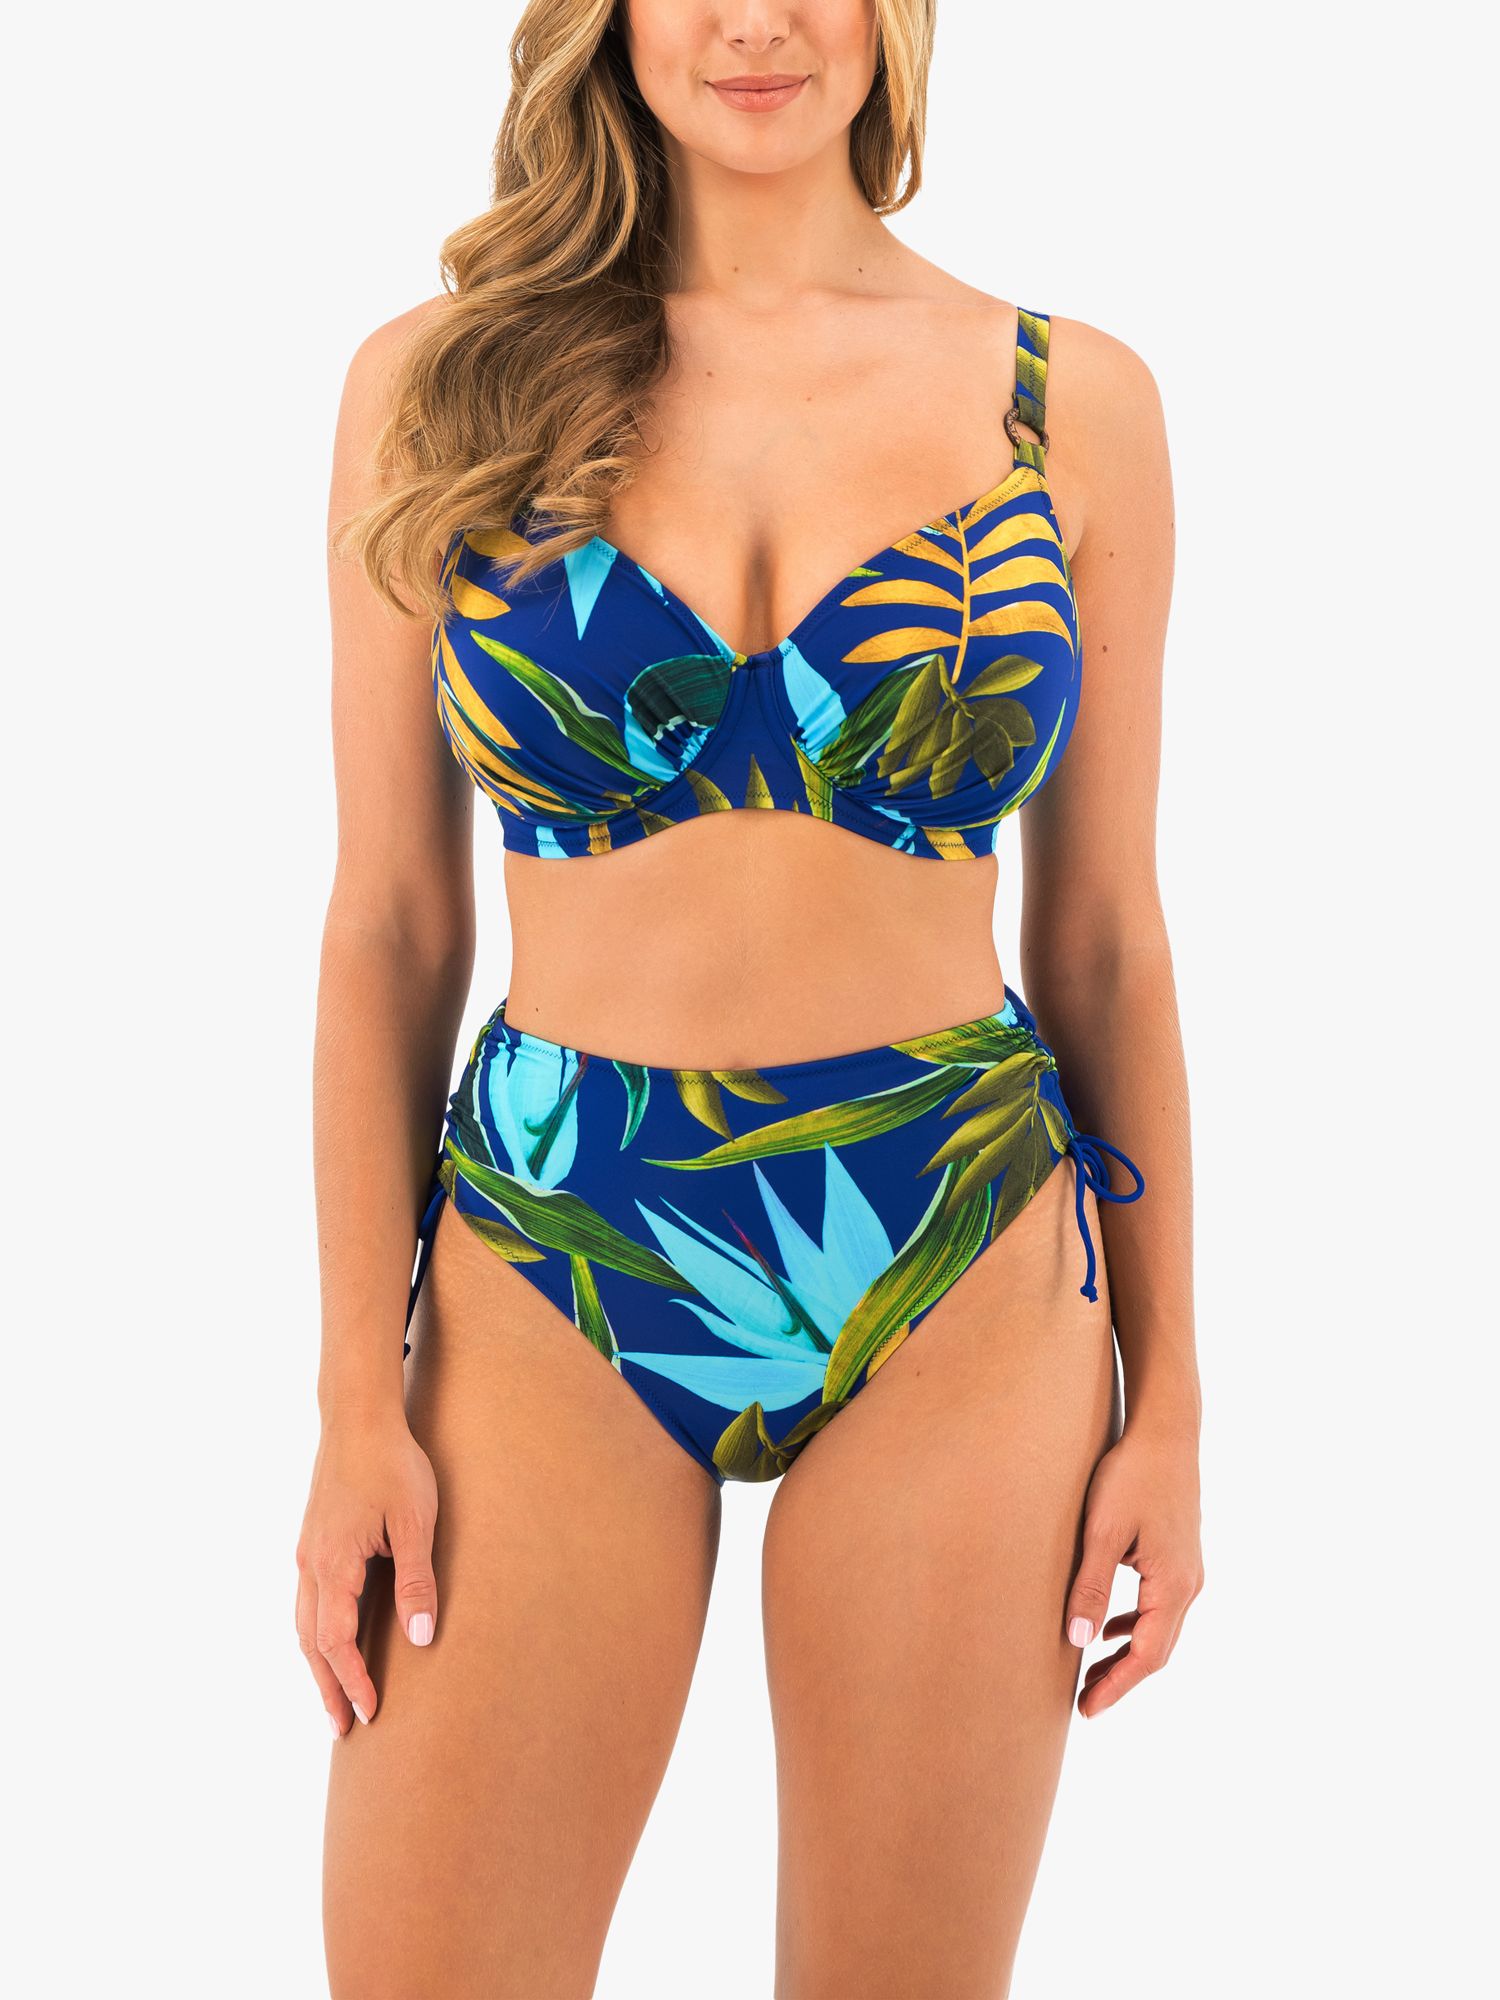 Fantasie Pichola Tropical Print High Waist Bikini Bottoms, Tropical Blue, S